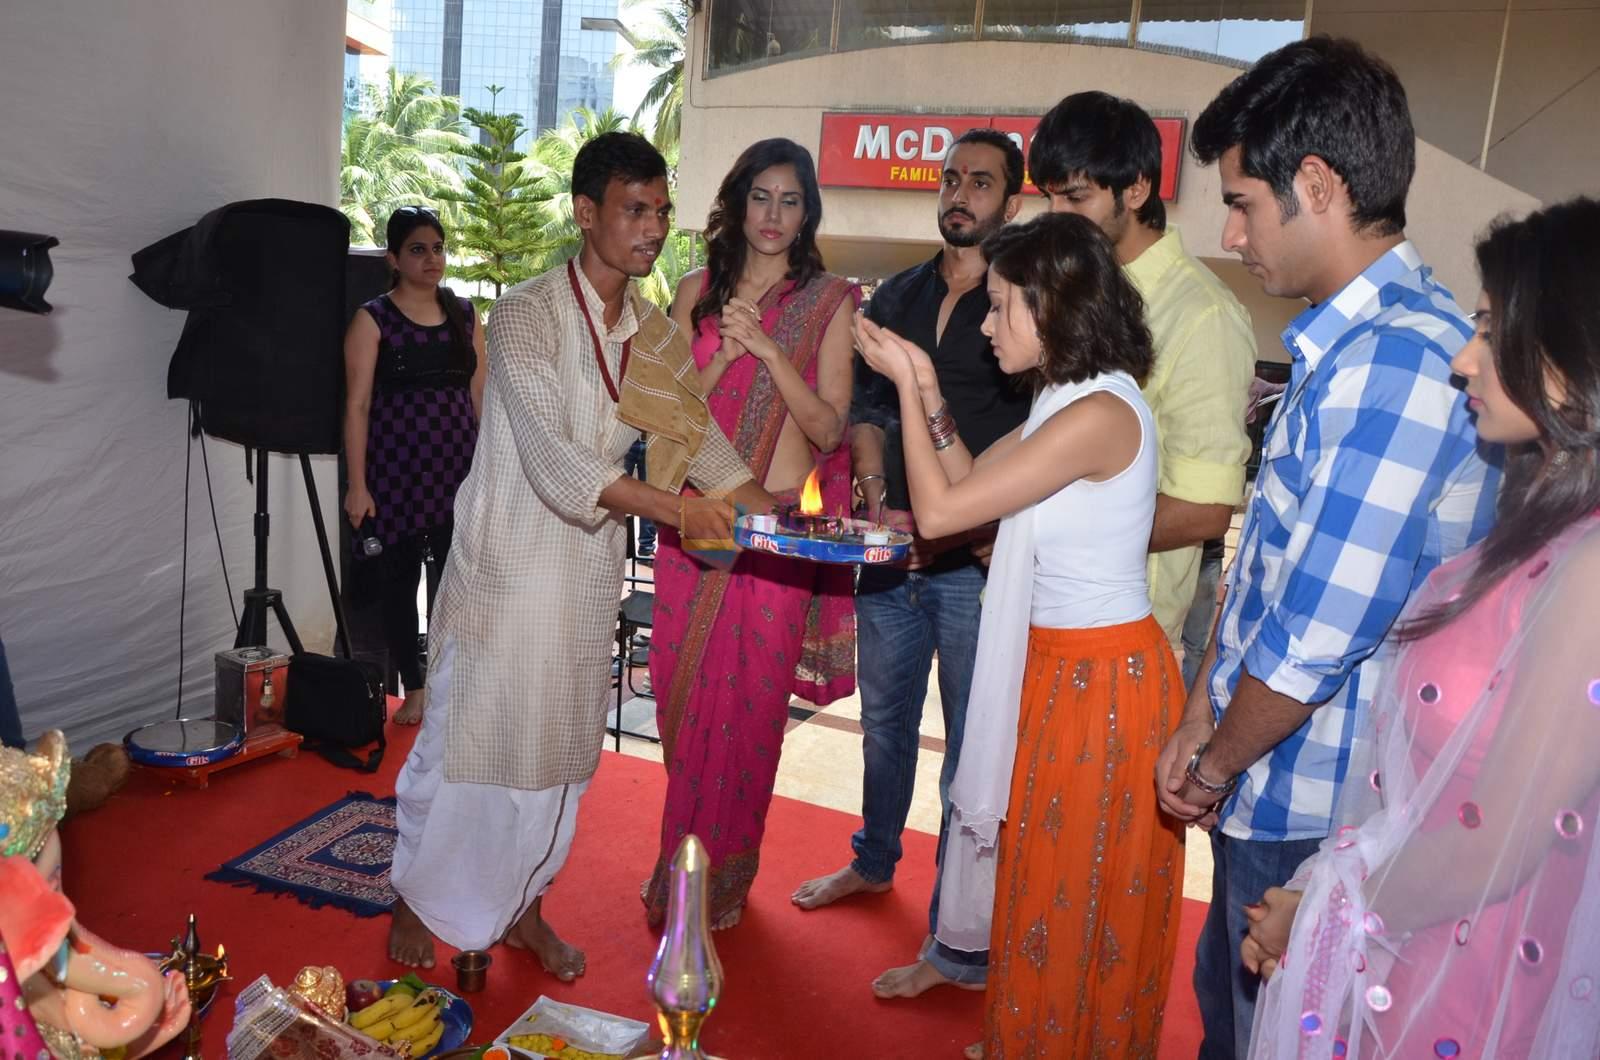 pyar ka punchnama cast at dna eco ganesha on 23rd Sept 2015